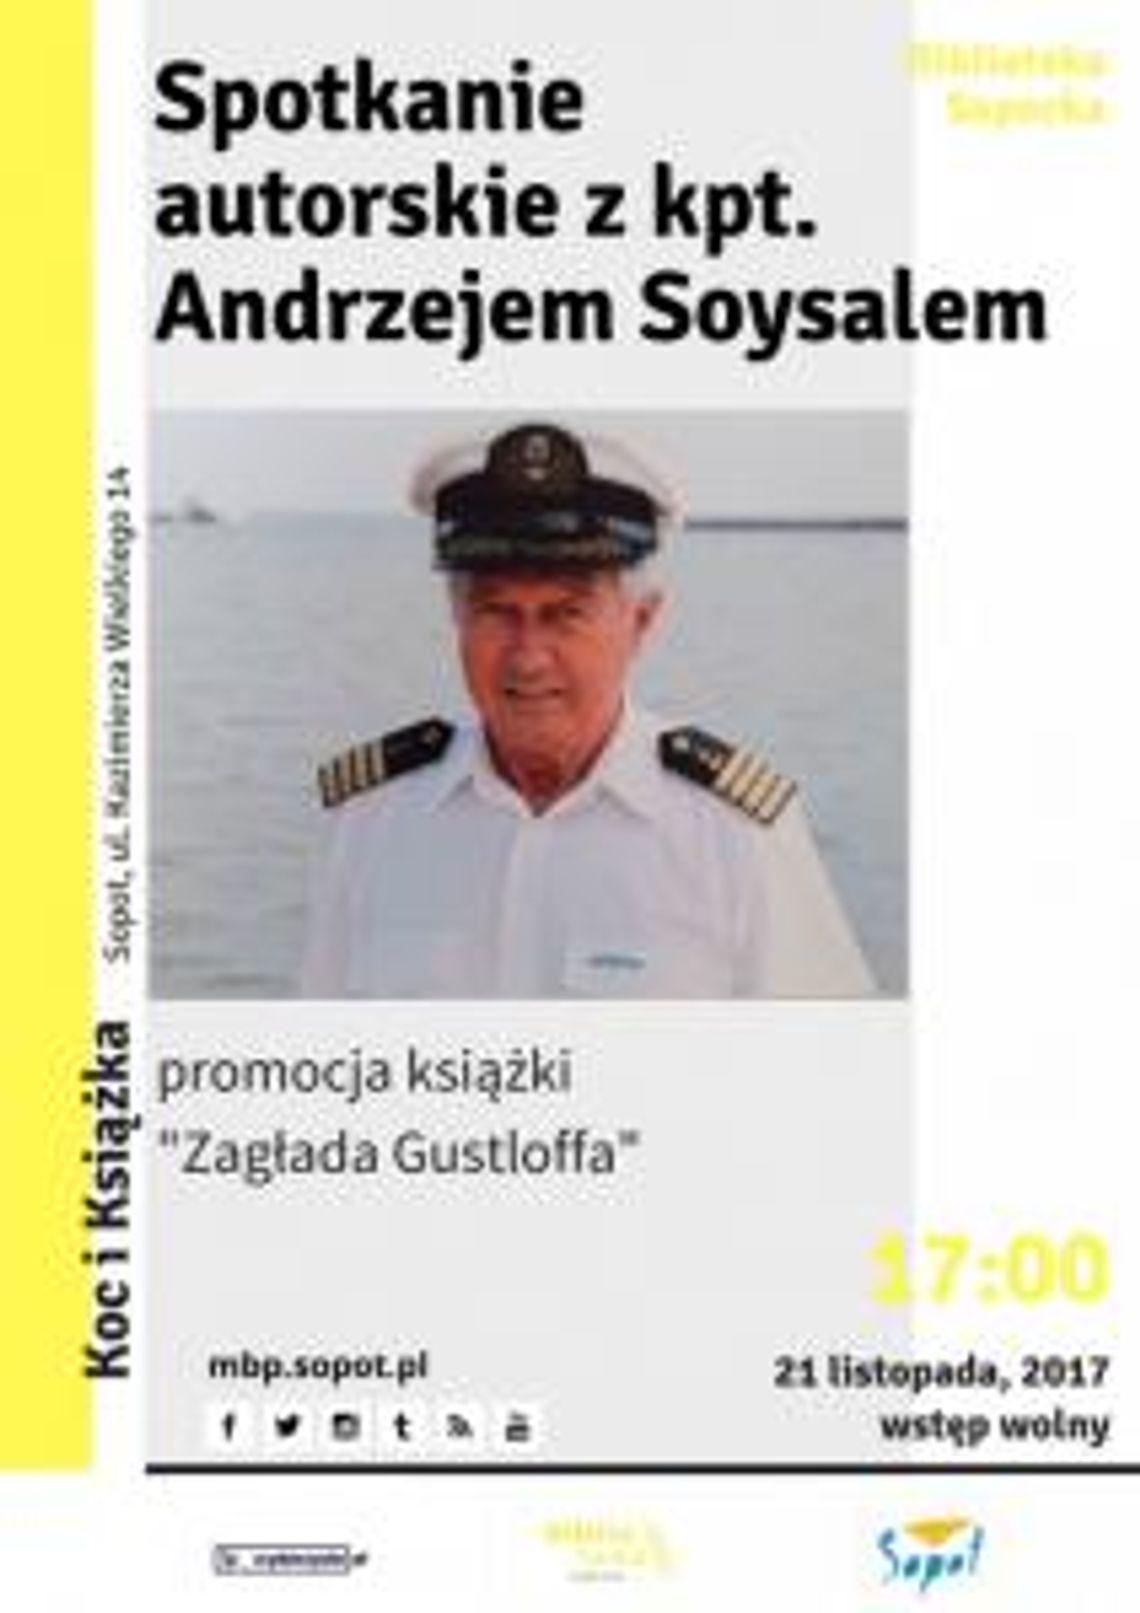 Spotkanie autorskie z kpt. Andrzejem Soysalem oraz promocja książki pt. „Zagłada Gustloffa”.